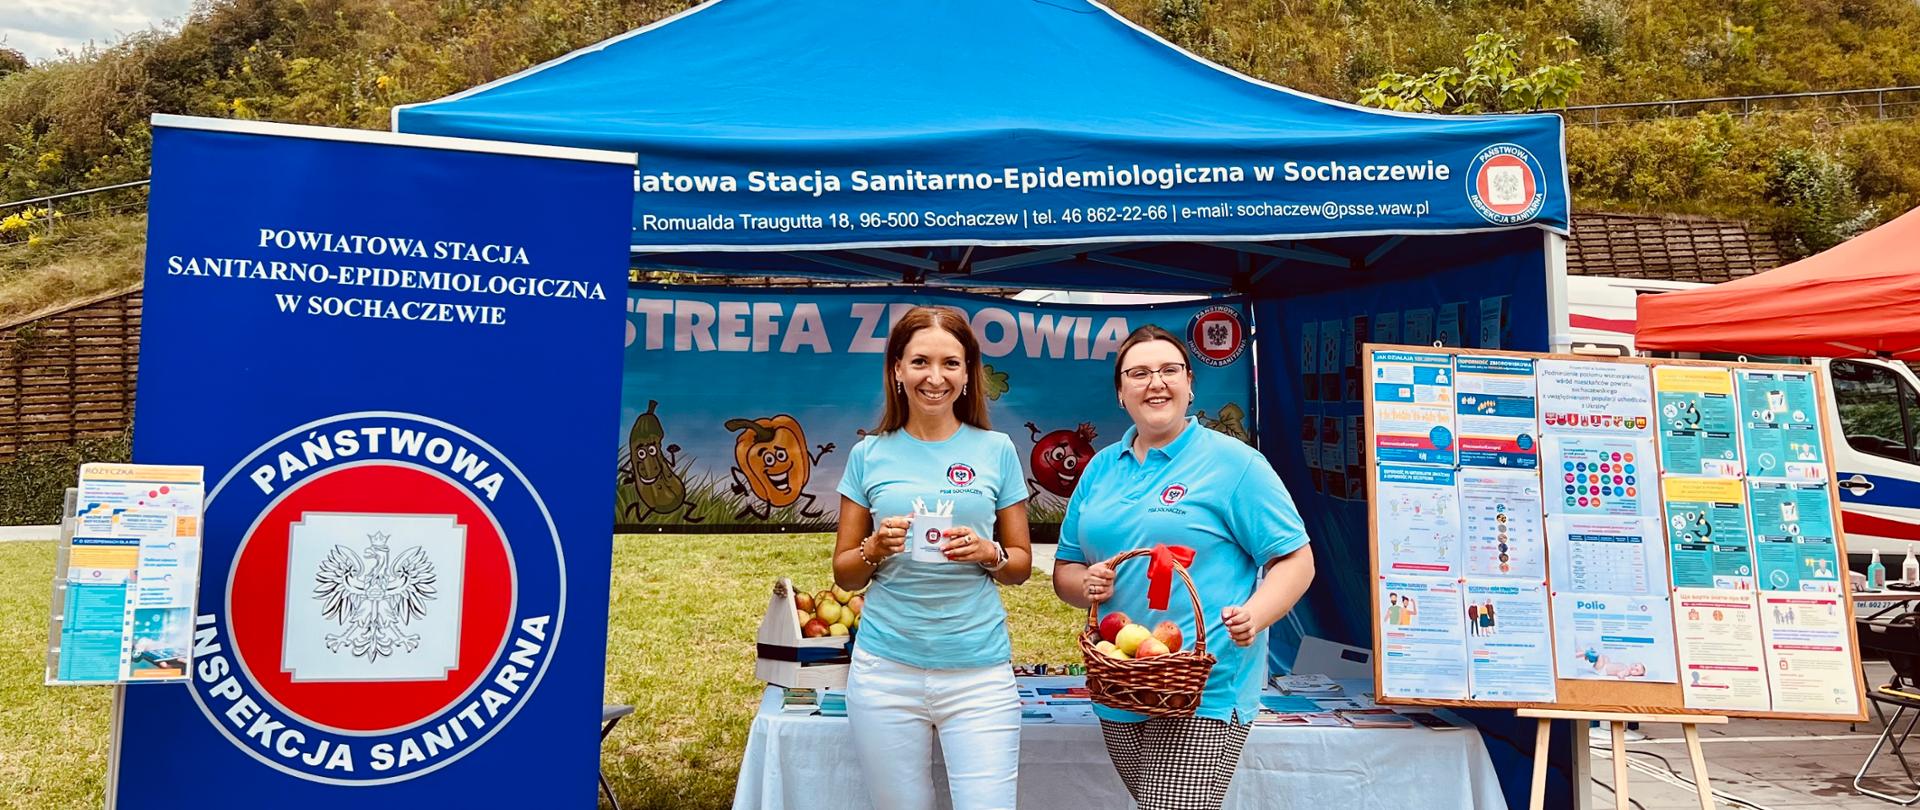 Dwie pracownice PSSE w Sochaczewie w błękitnych koszulkach z logiem Inspekcji Sanitarnej przed stoiskiem prozdrowotnym podczas 8. Święta Bzury w Sochaczewie. Jedna z kobiet trzyma w rękach koszyk z jabłkami, druga kubek z długopisami promocyjnymi. W tle widać Ruiny Zamku Książąt Mazowieckich w Sochaczewie.